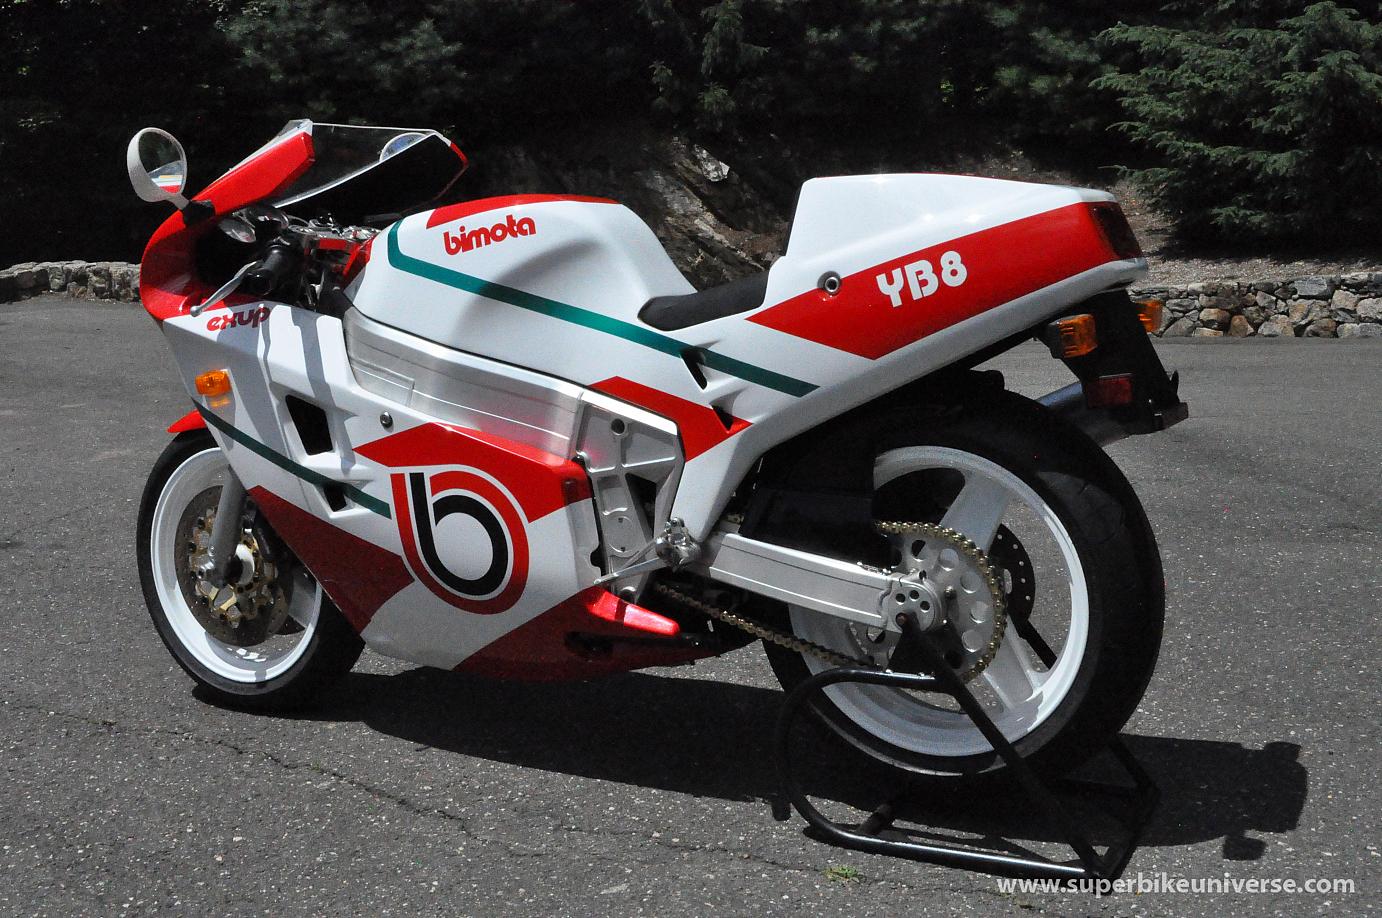 Мотоцикл ducati 1199 panigale superleggera 2014 фото, характеристики, обзор, сравнение на базамото